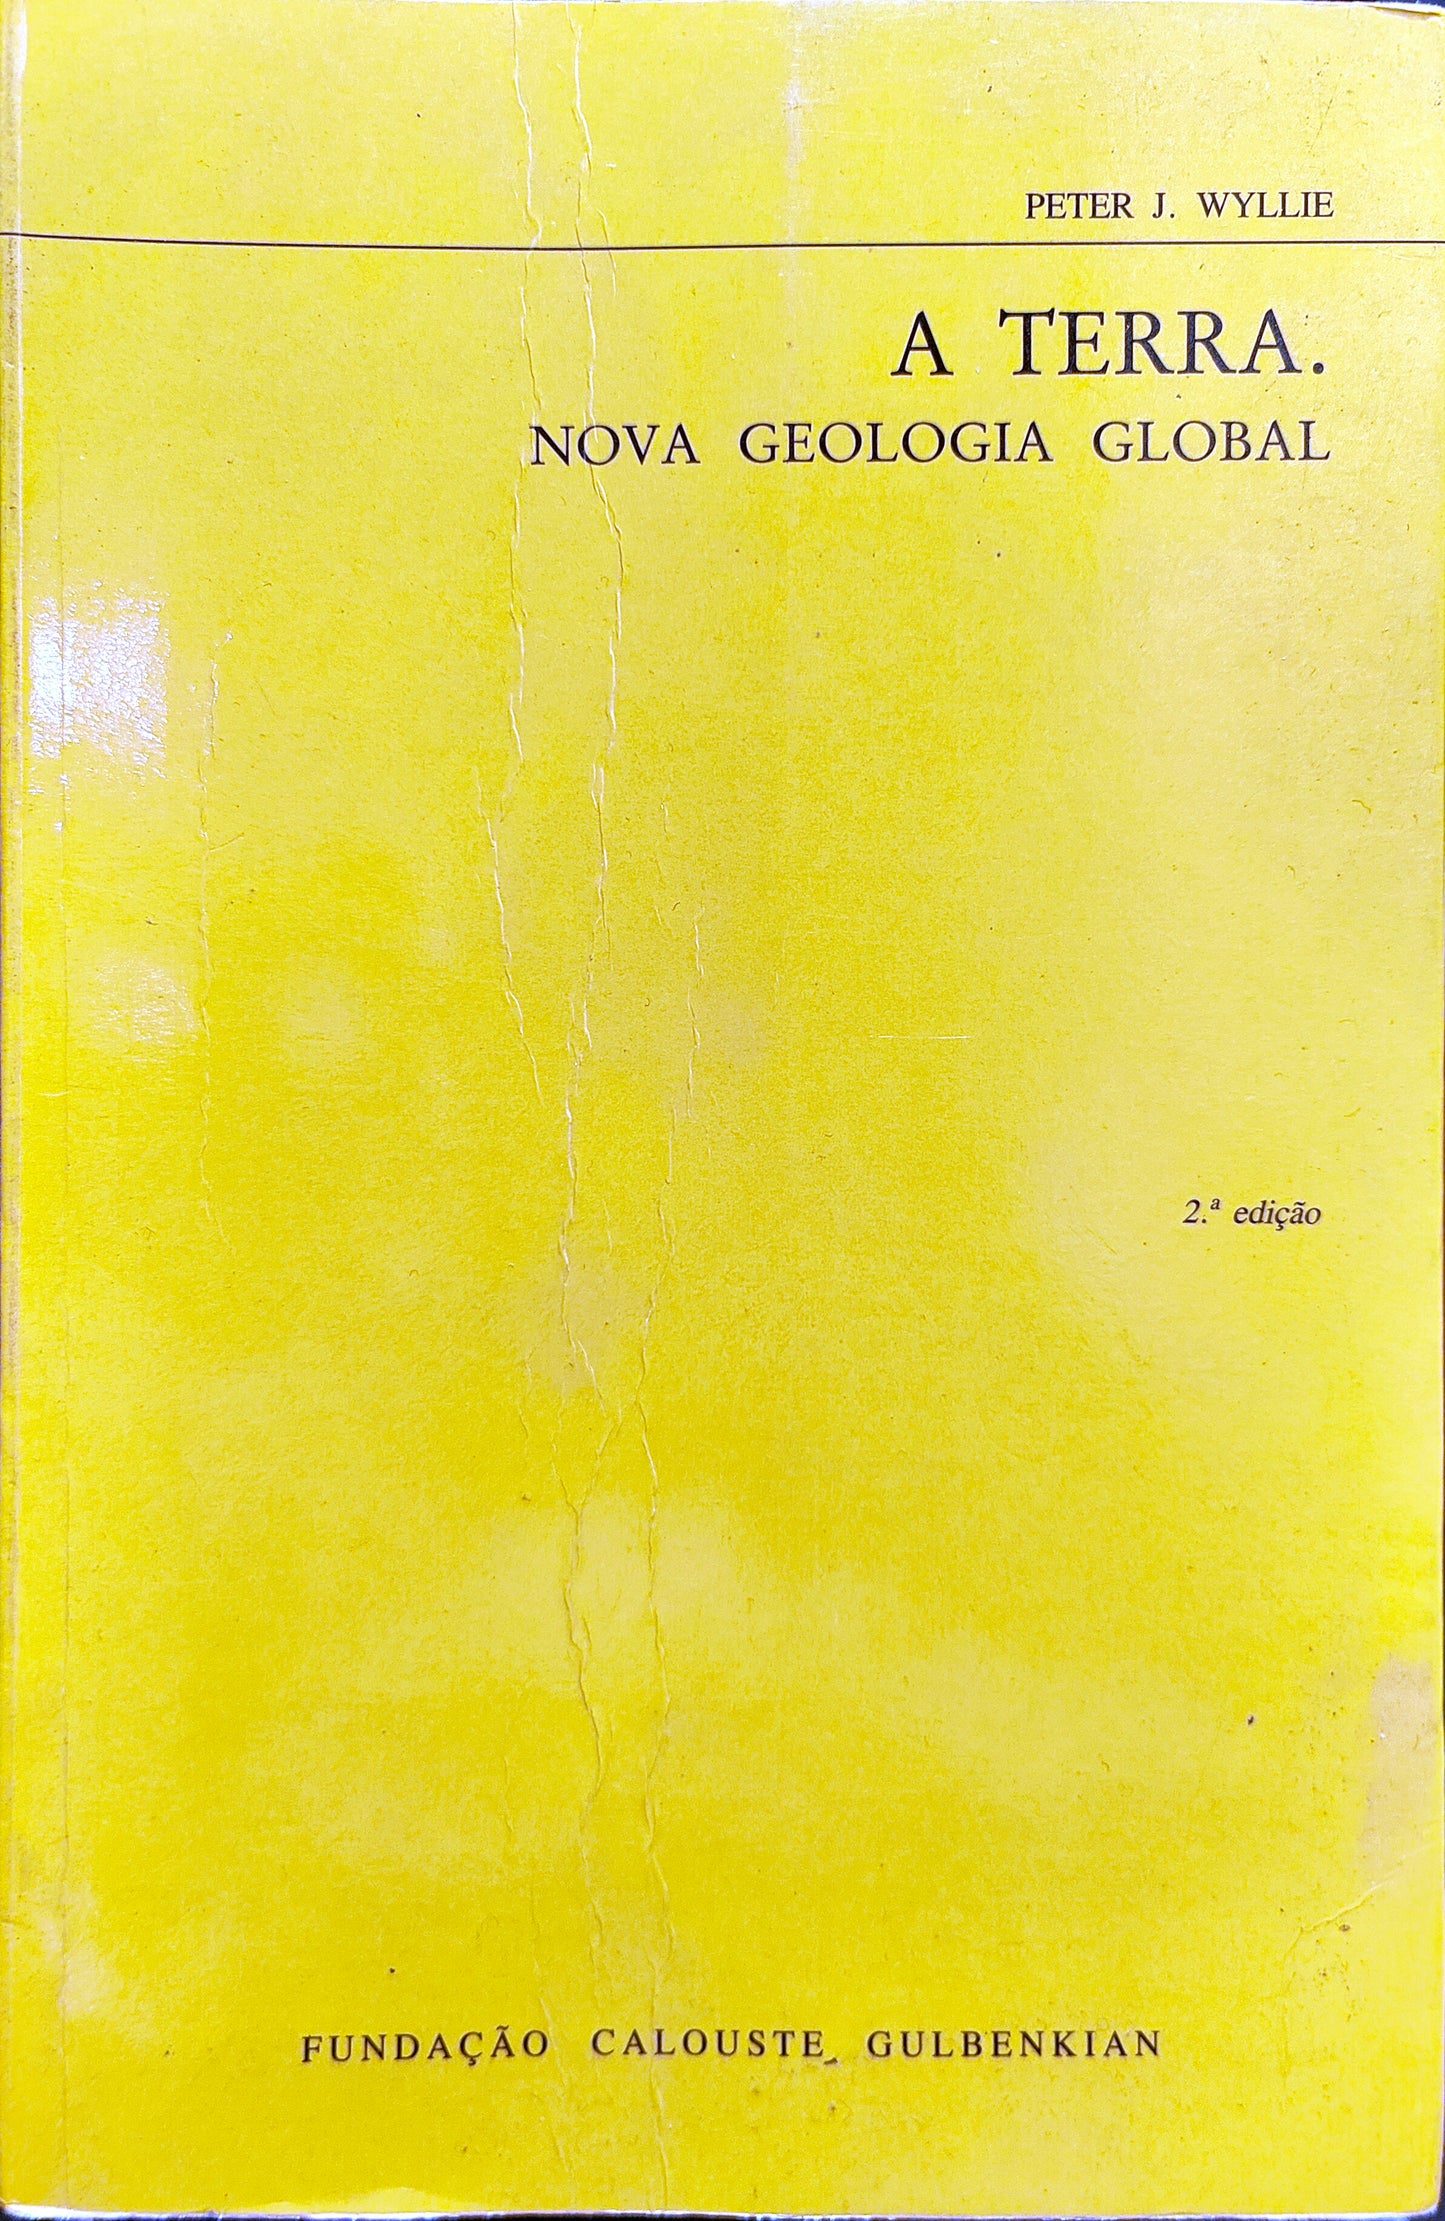 LIVRO - A Terra. Nova Geologia Global de Peter Wyllie - USADO